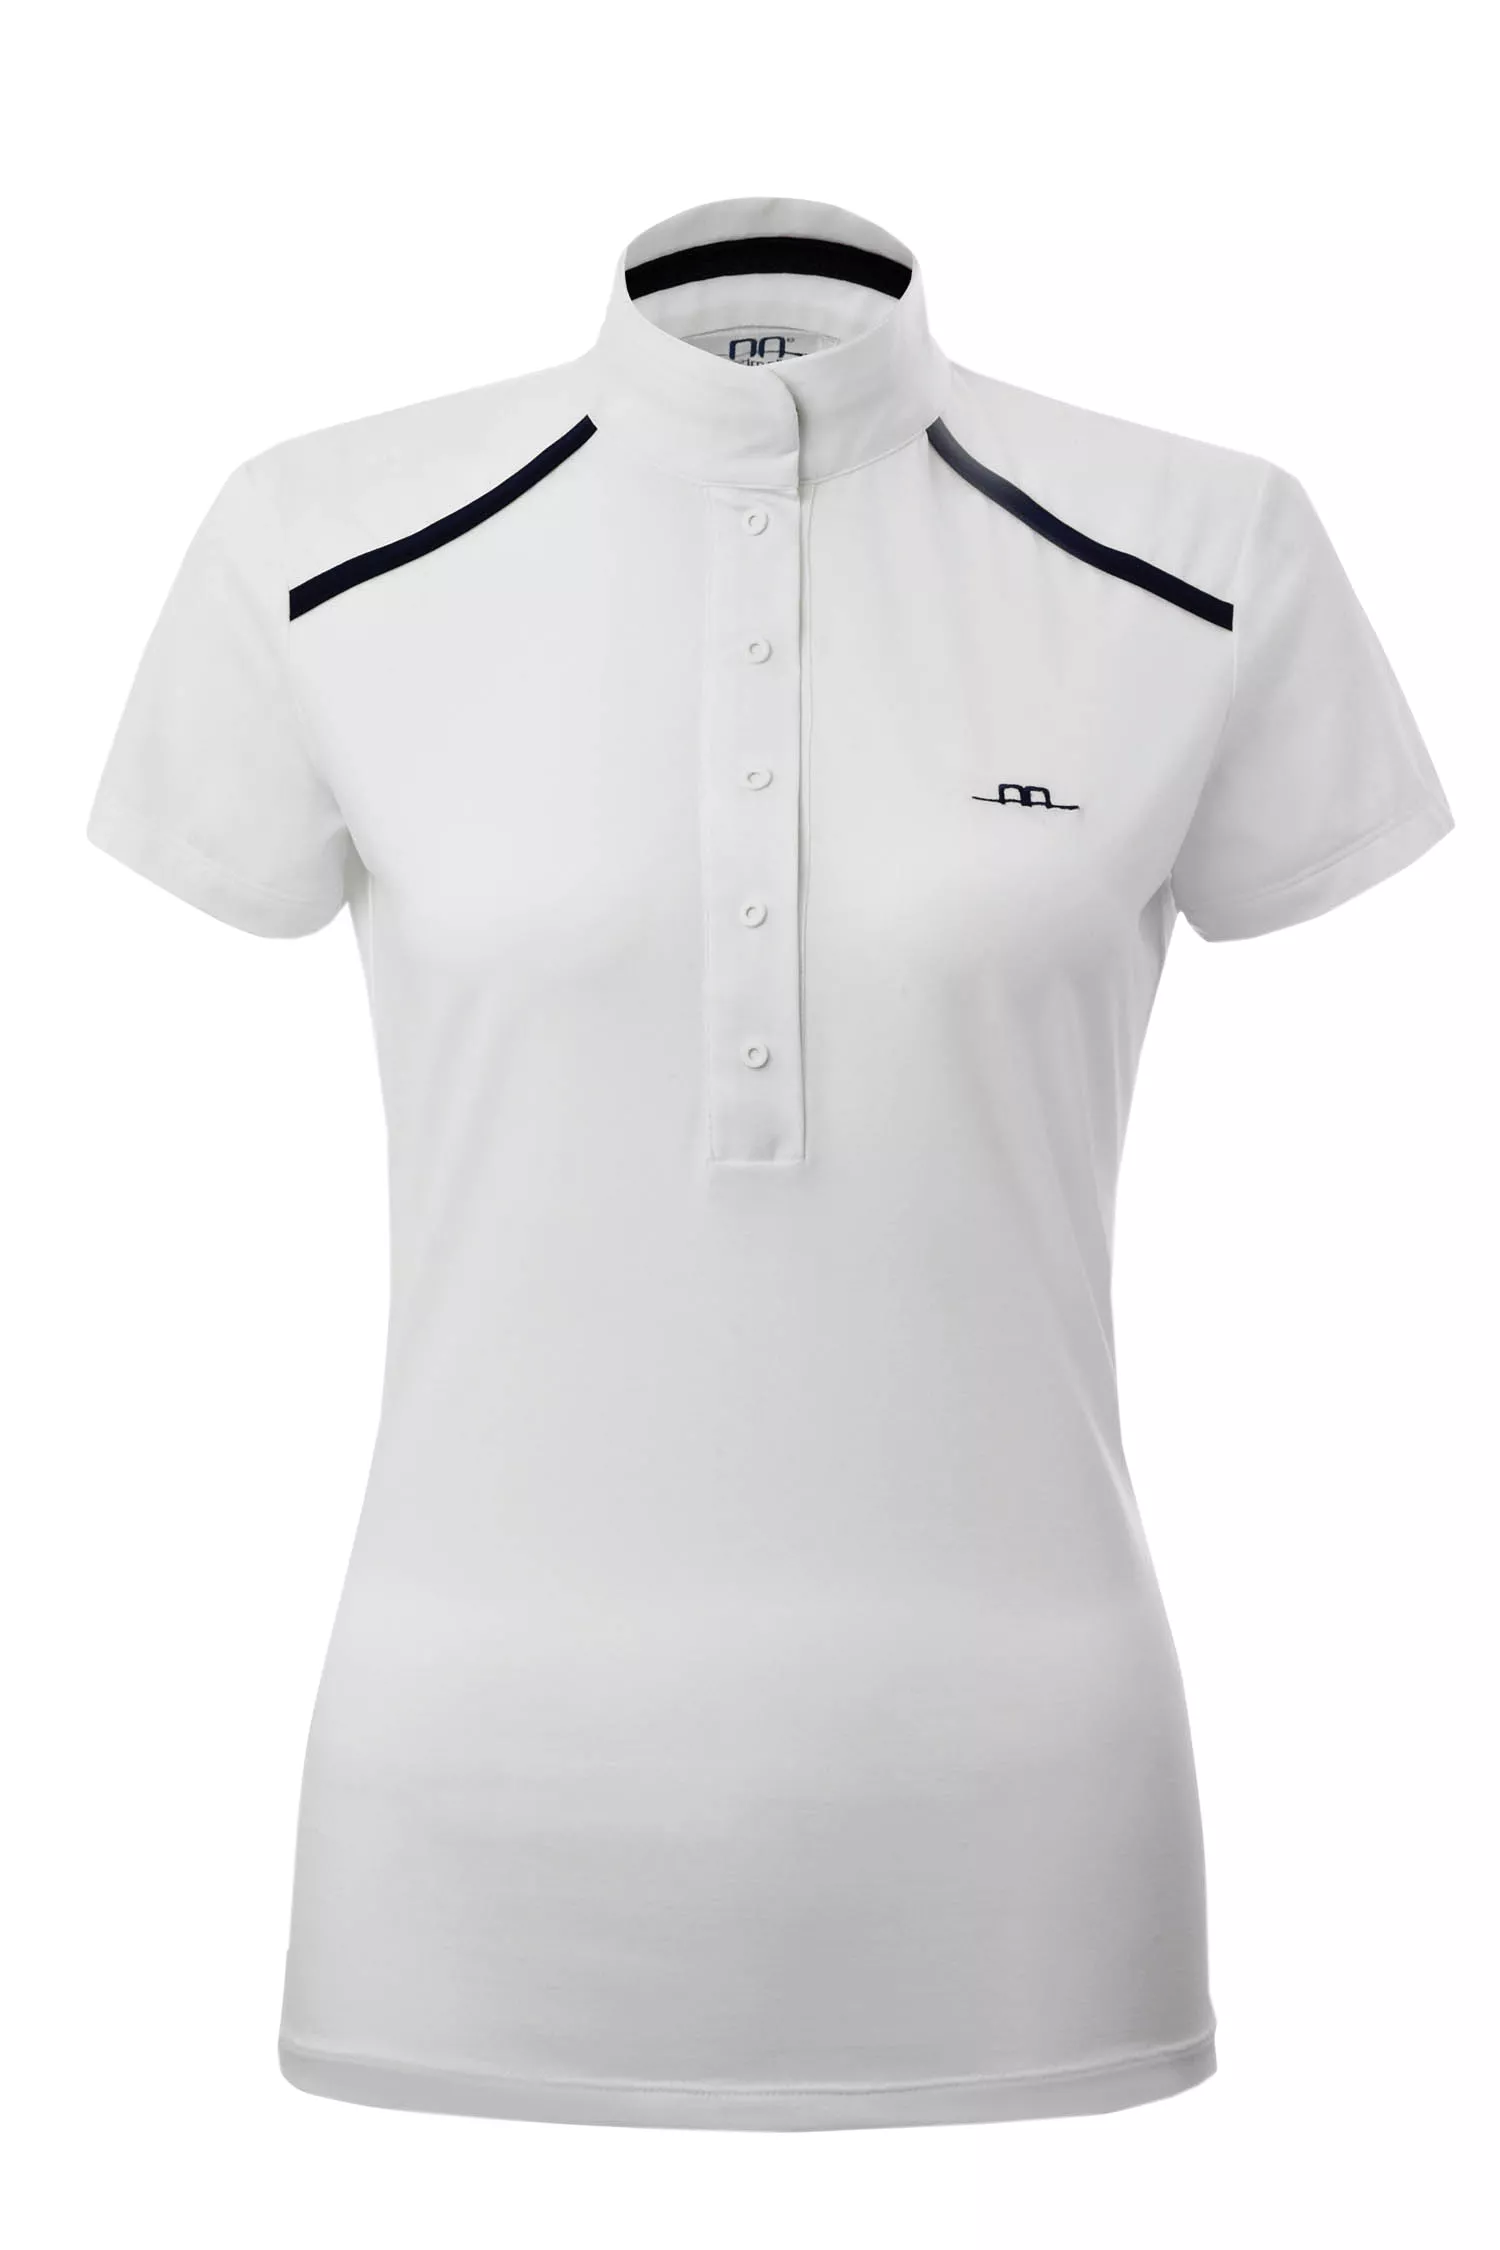 Albanese - T-shirt de compétition femme "Rio", blanc/navy